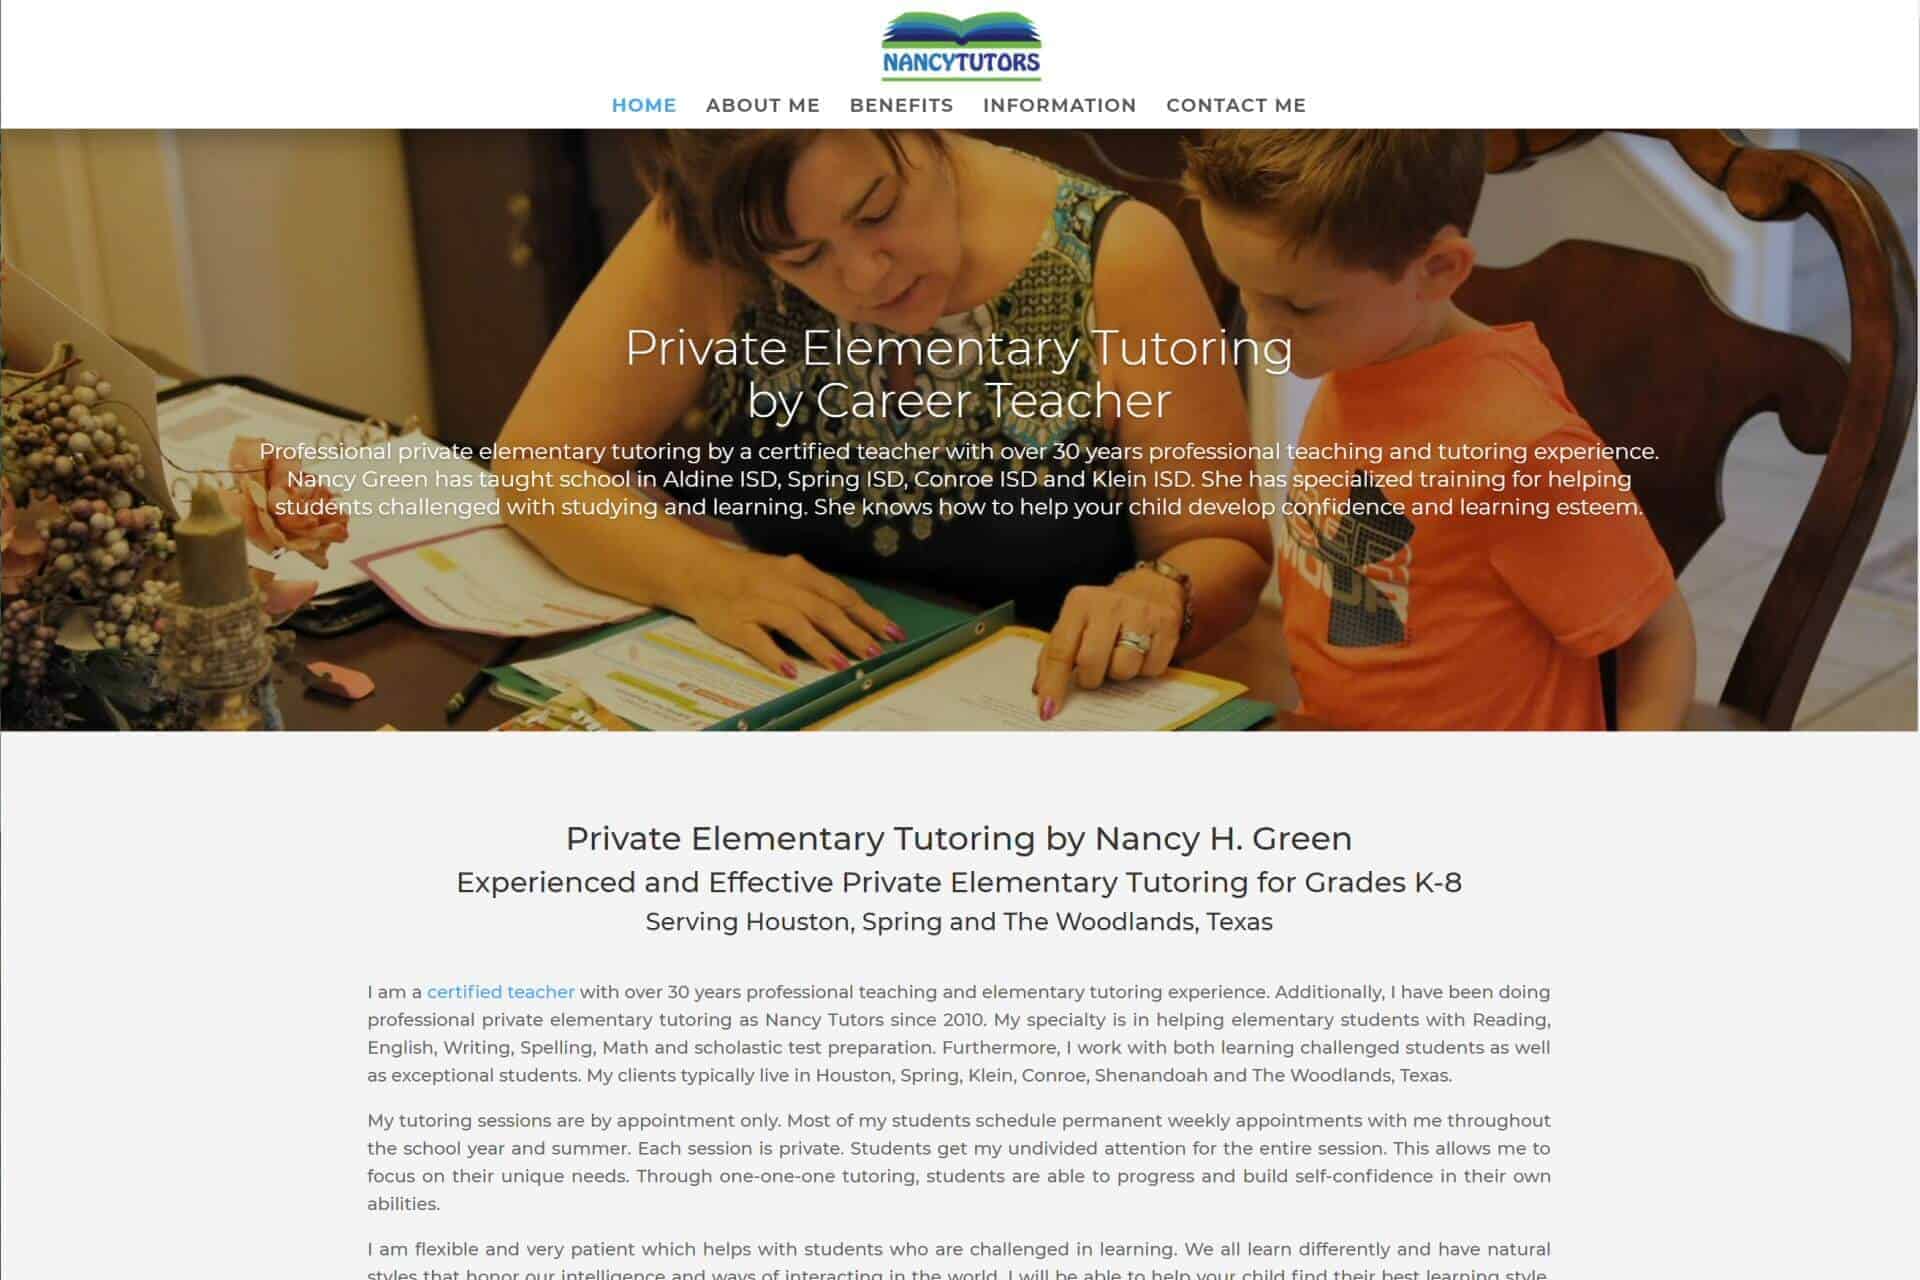 Nancy Tutors - Austin Private Elementary Tutoring - Website Links for Marquise Pools #1 Best Pool Builder